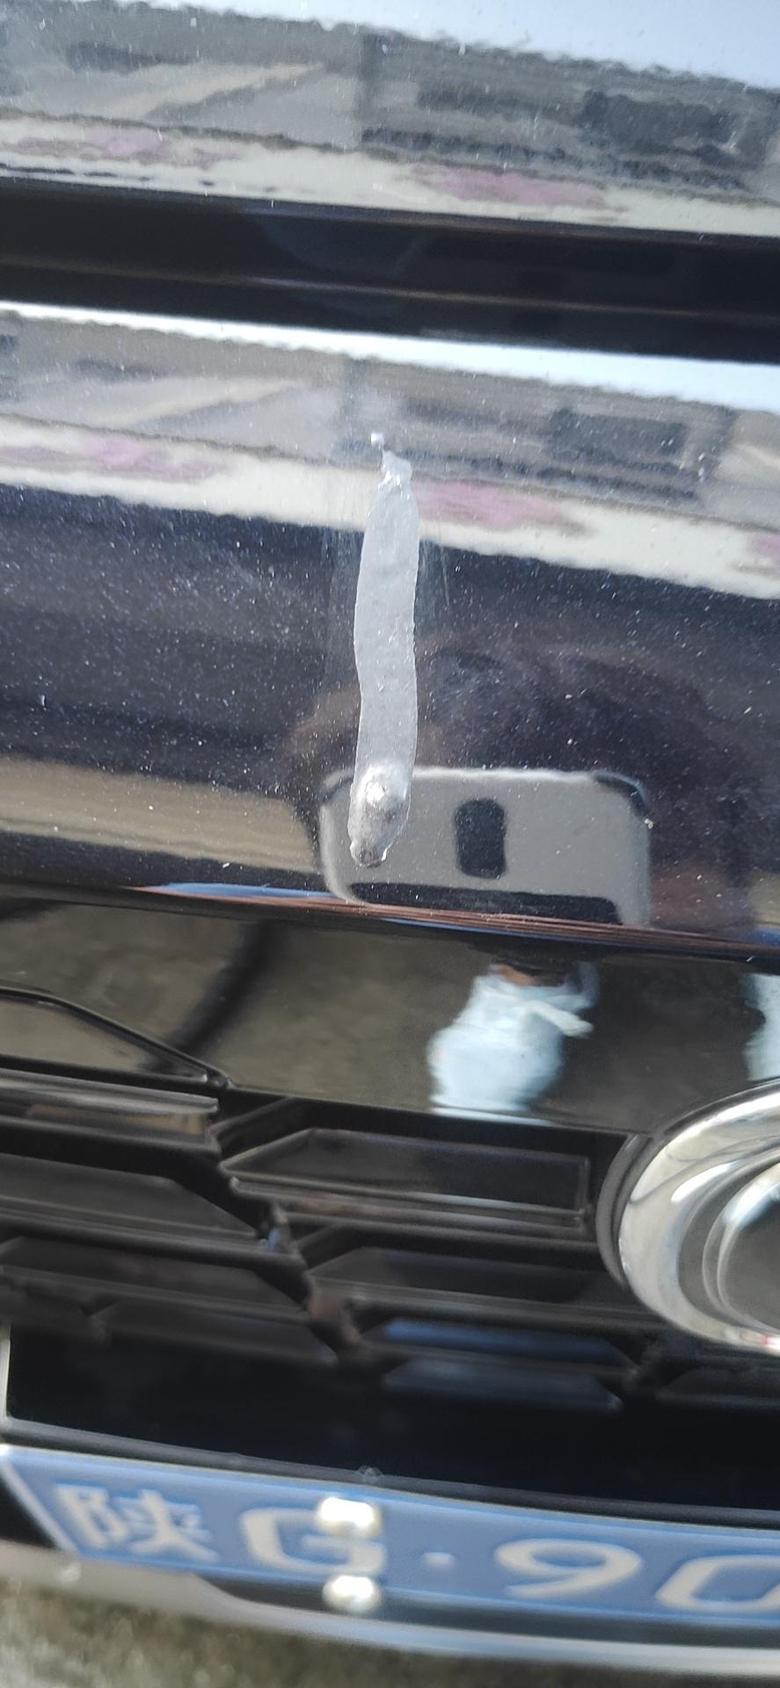 长安uni k-昨天洗车时发现这个不知道是胶水还是啥。请问这东西怎么清掉啊